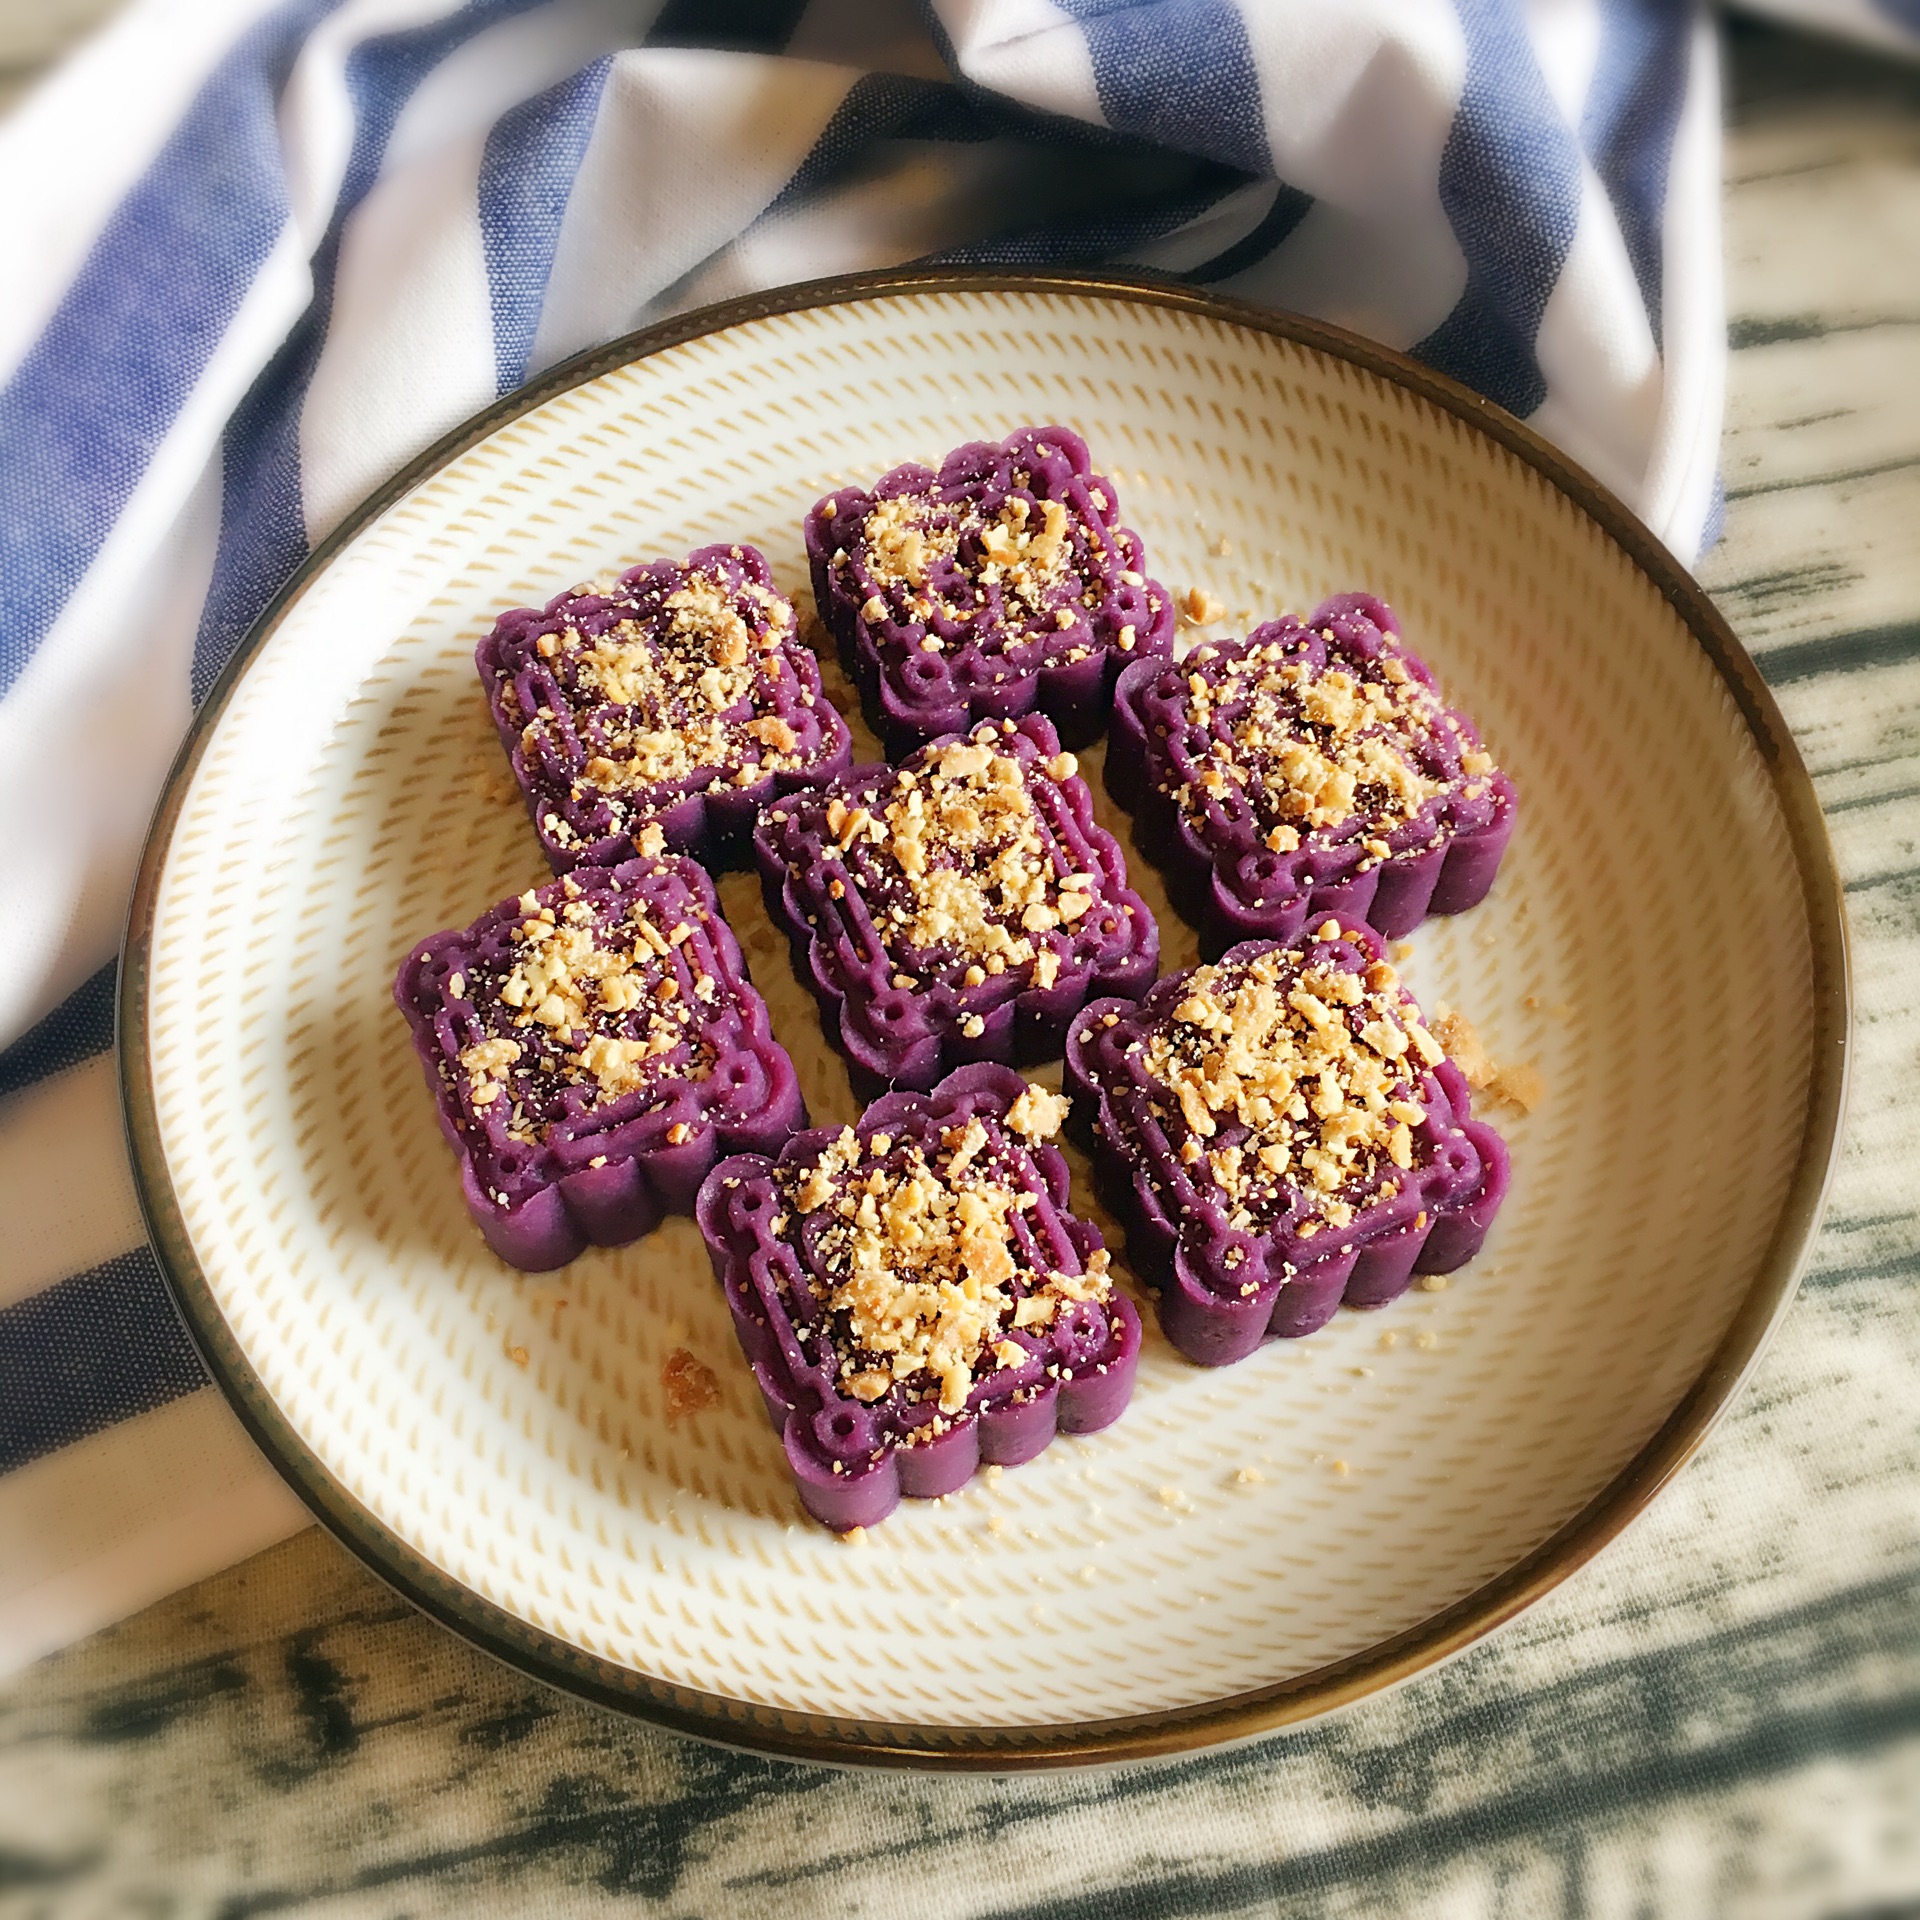 坚果紫薯糕怎样吃?